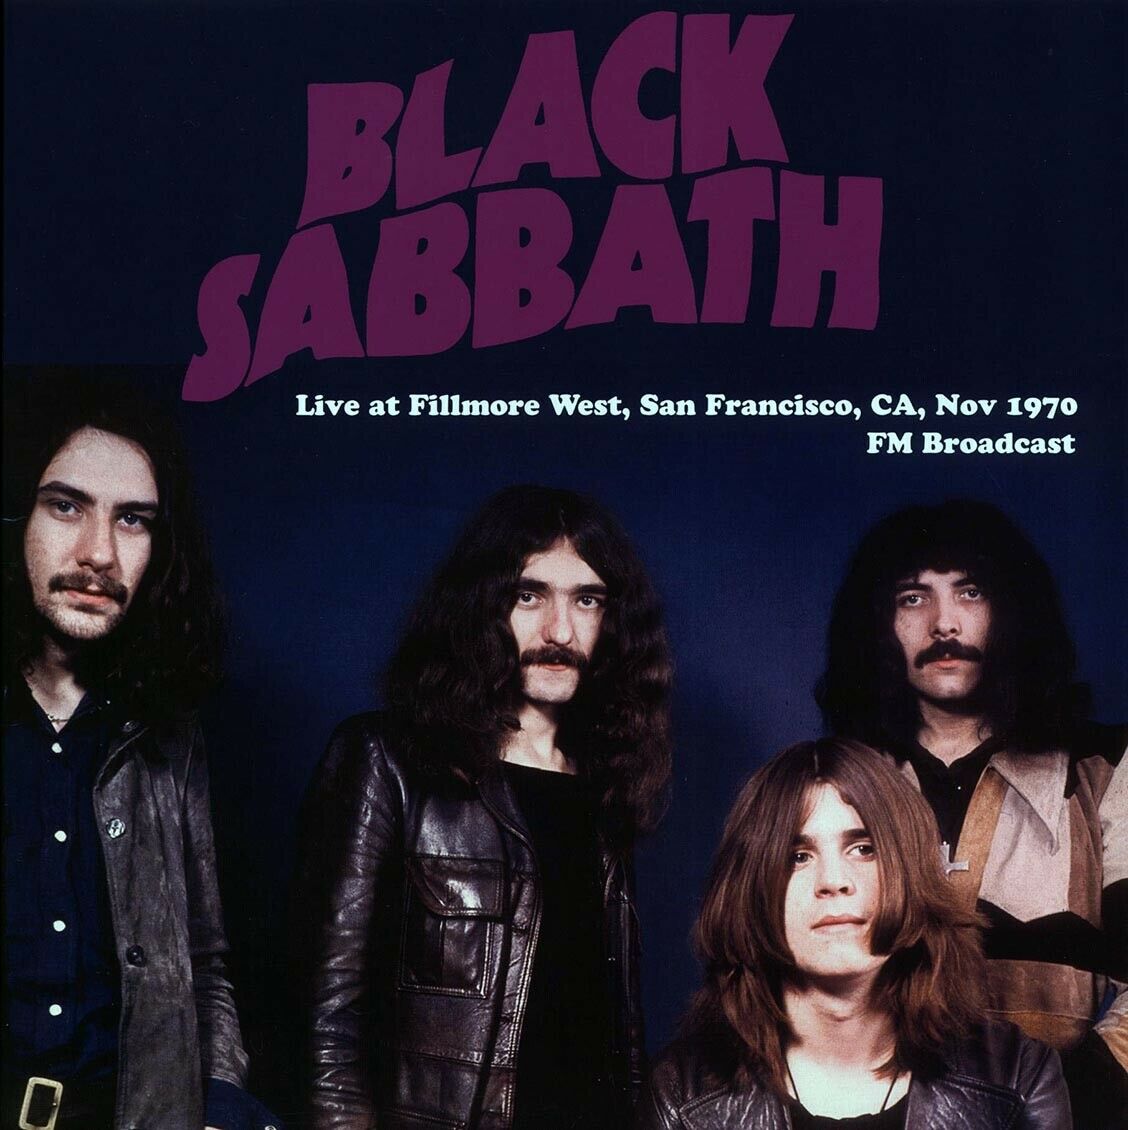 BLACK SABBATH - LIVE AT FILLMORE WEST, SAN FRANCISCO 1970 Vinyl LP